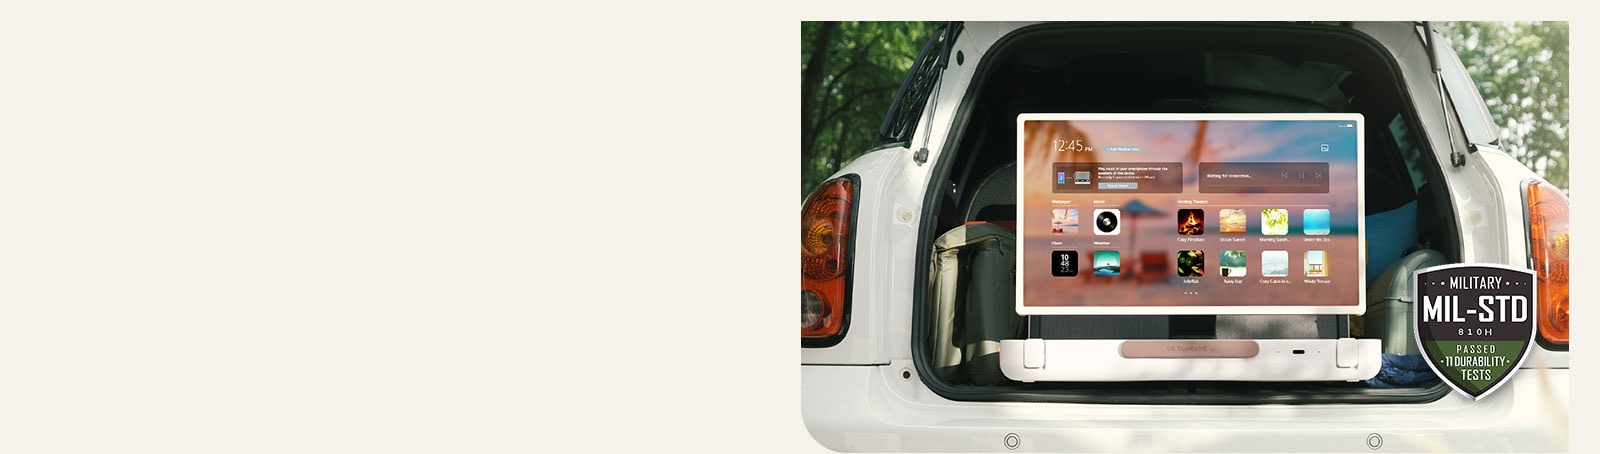 Vista frontal de LG StanbyME Go. El producto está colocado en el coche, la pantalla rorada horizontalmente, mostrando la pantalla de inicio. En la parte inferior izquierda de la imagen se muestra el icono de especificaciones militares.